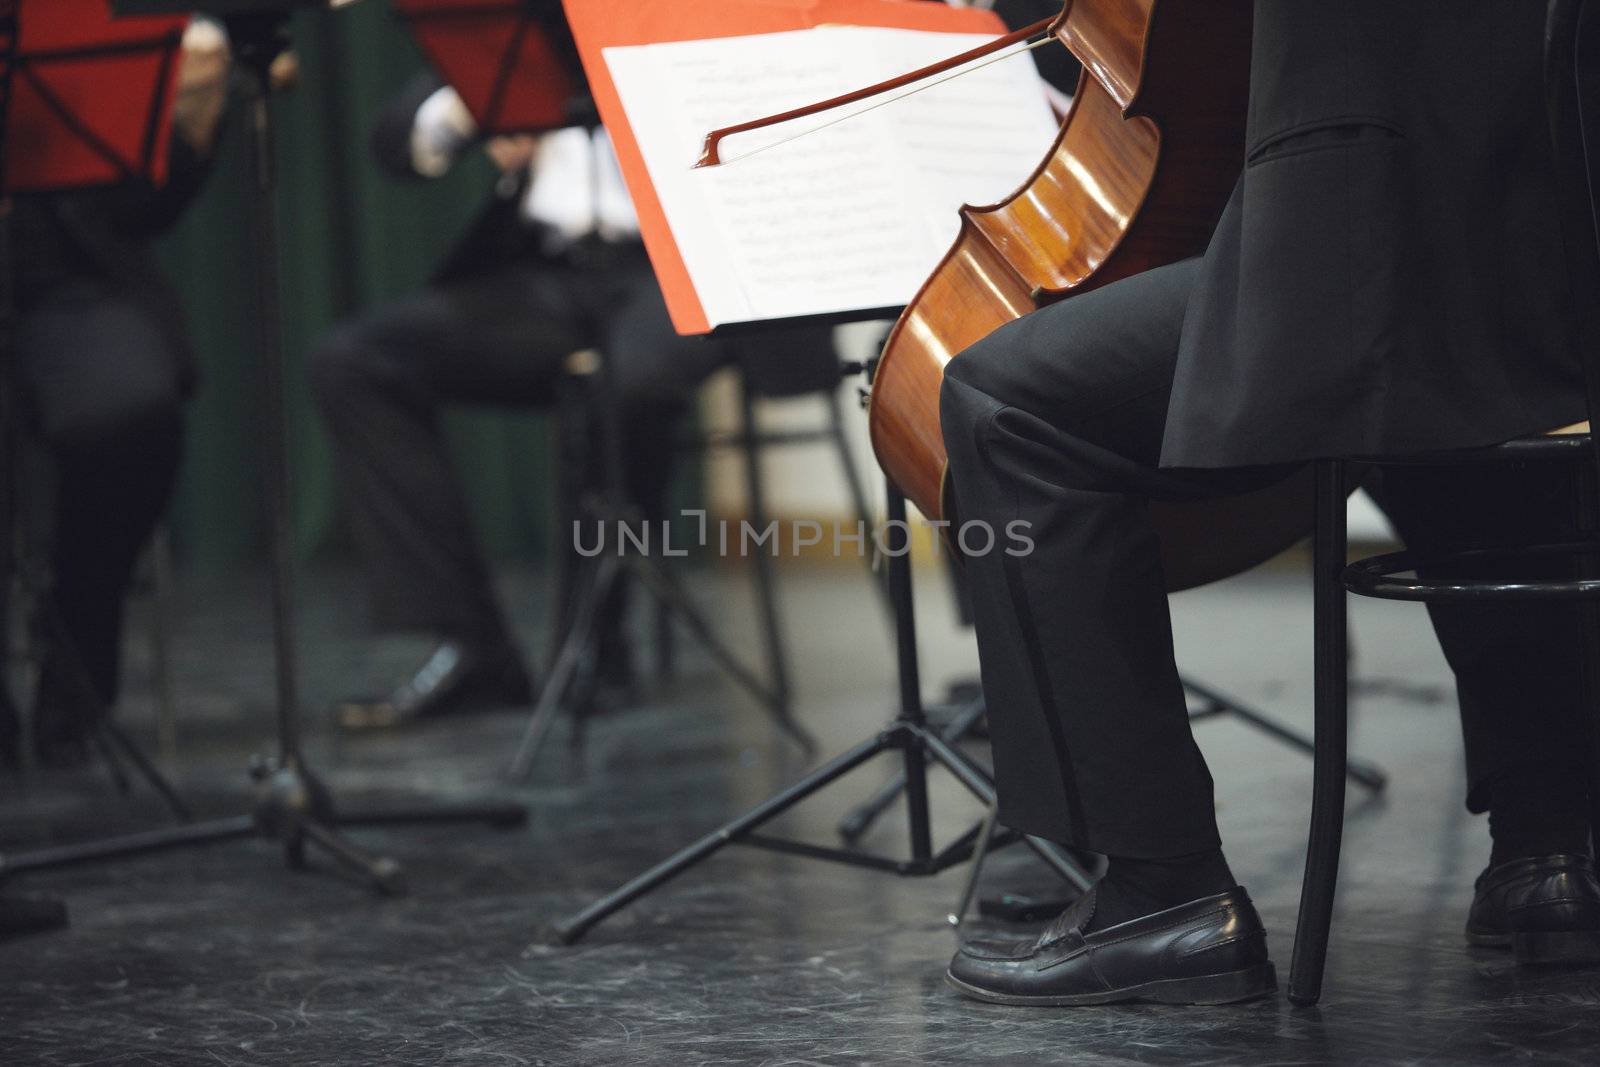 Cello musician at the concert